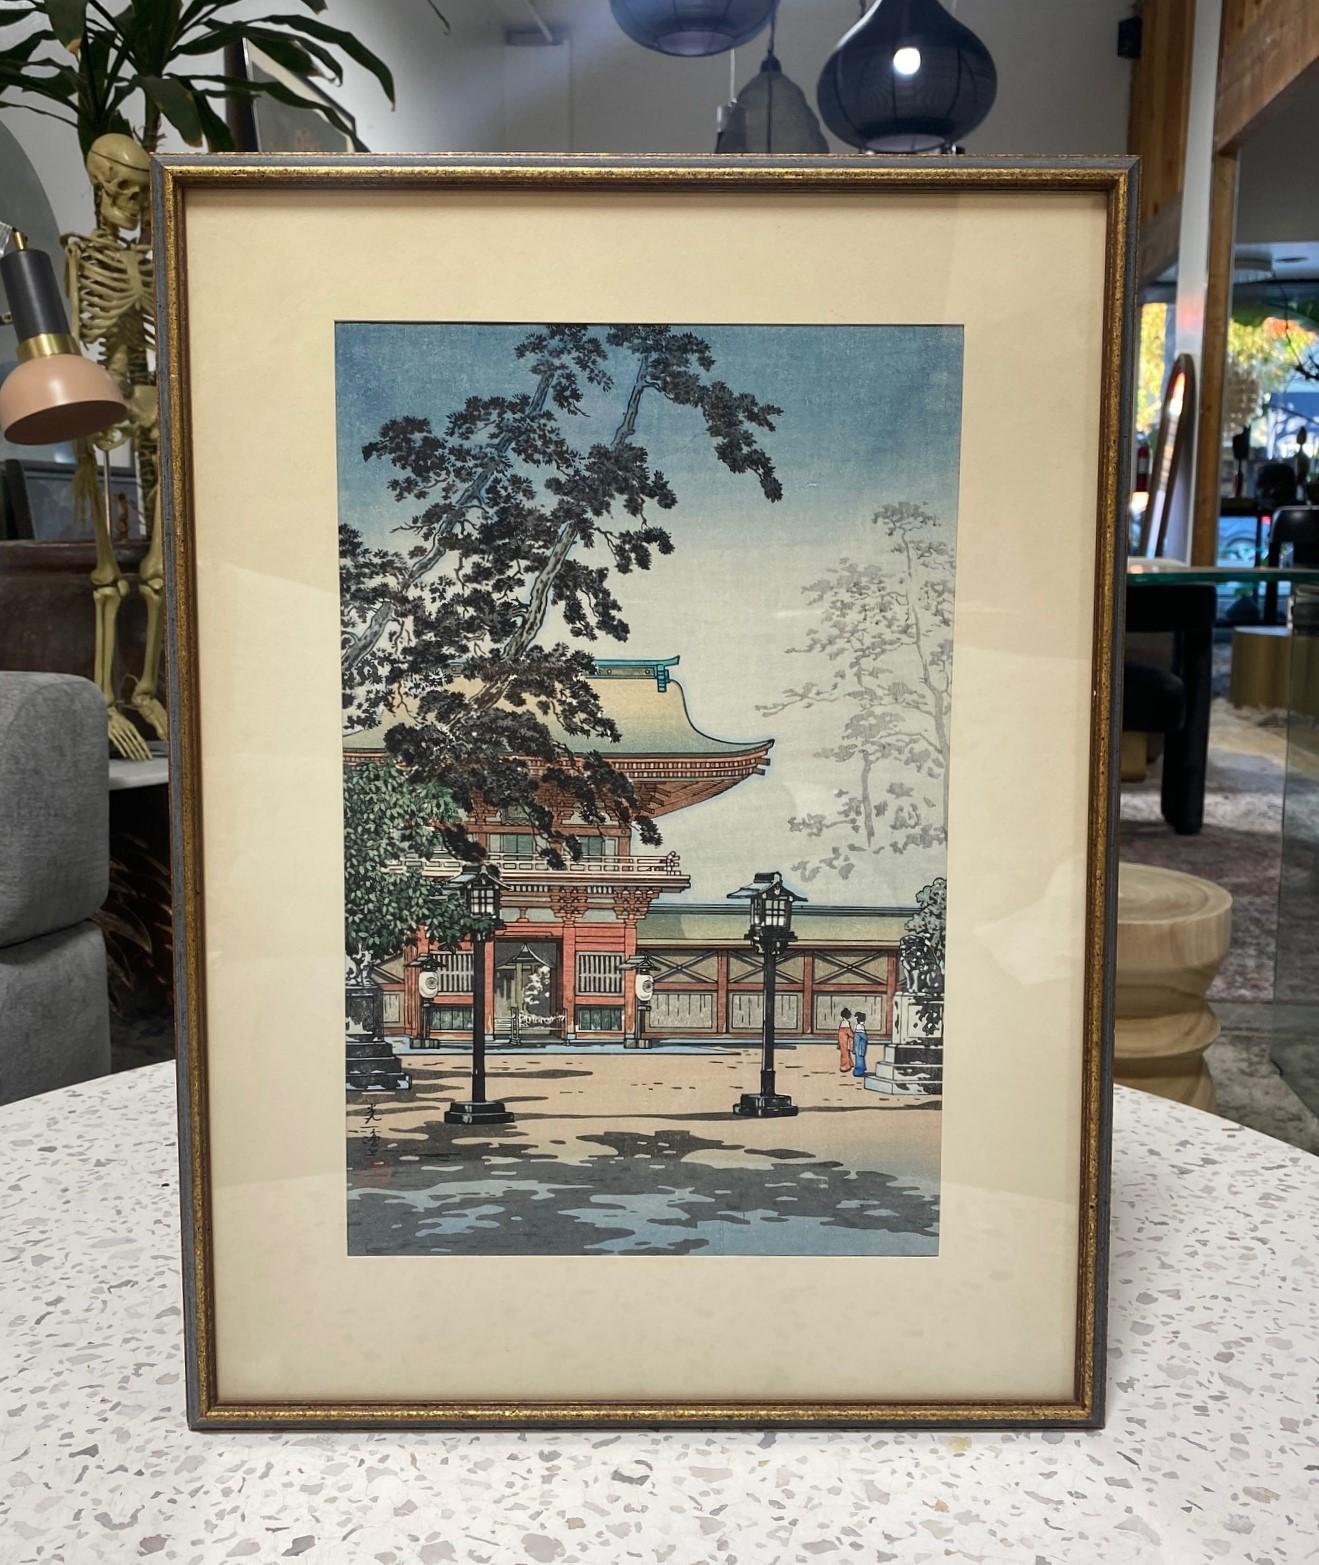 A wonderfully composed, beautiful image by renowned Japanese artist/printmaker Tsuchiya Koitsu (1870 - 1949) titled 